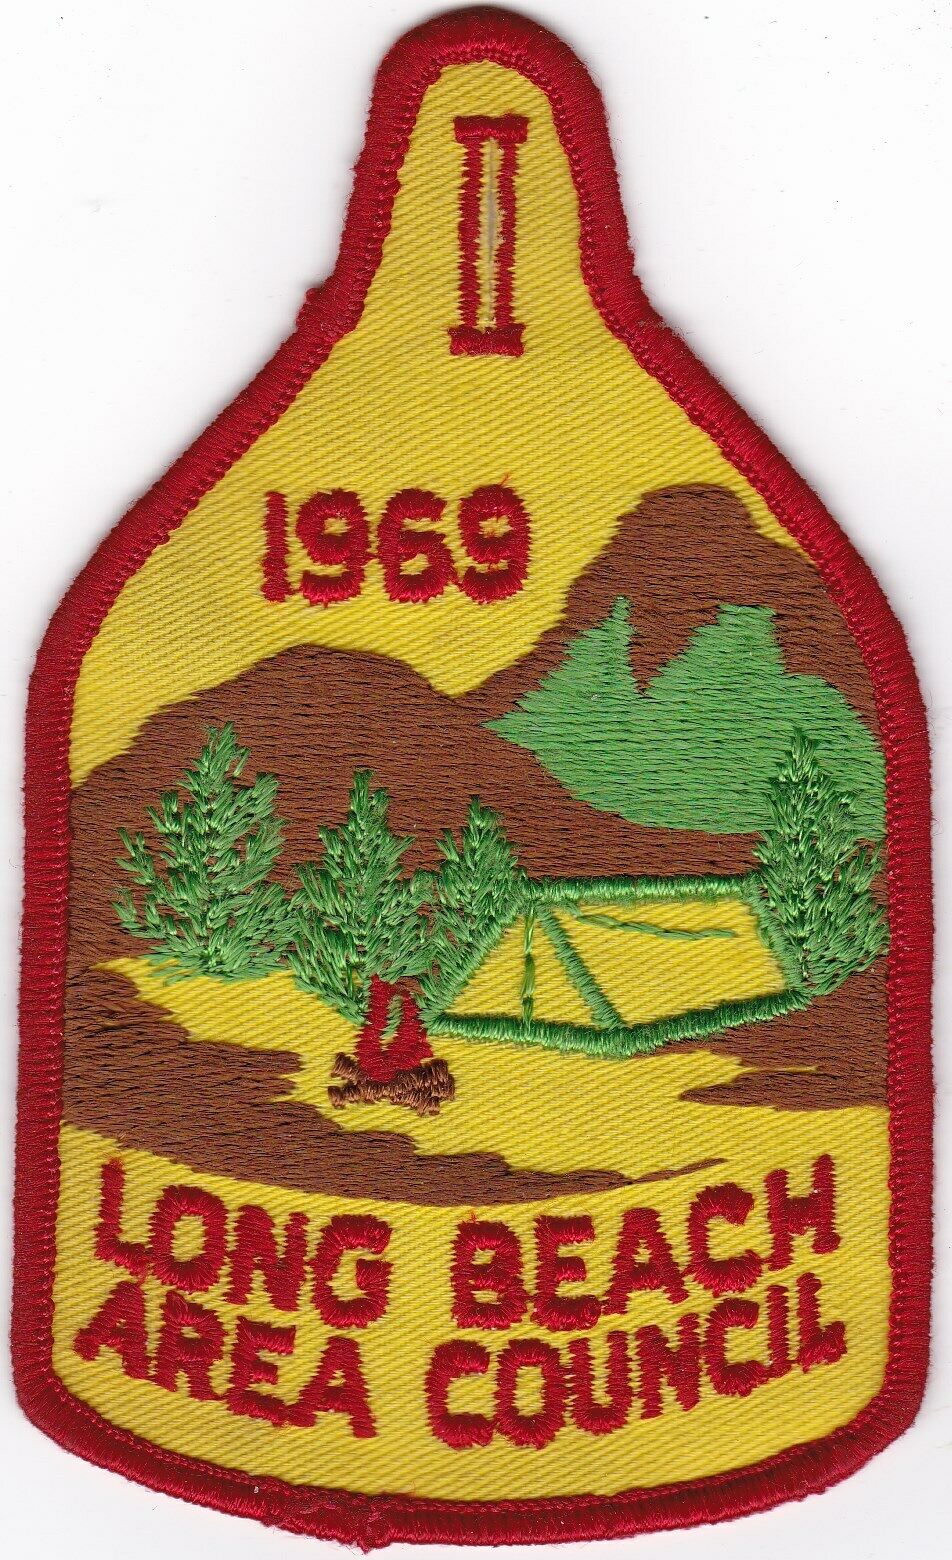 Council Patch - Long Beach Area Council - 1969